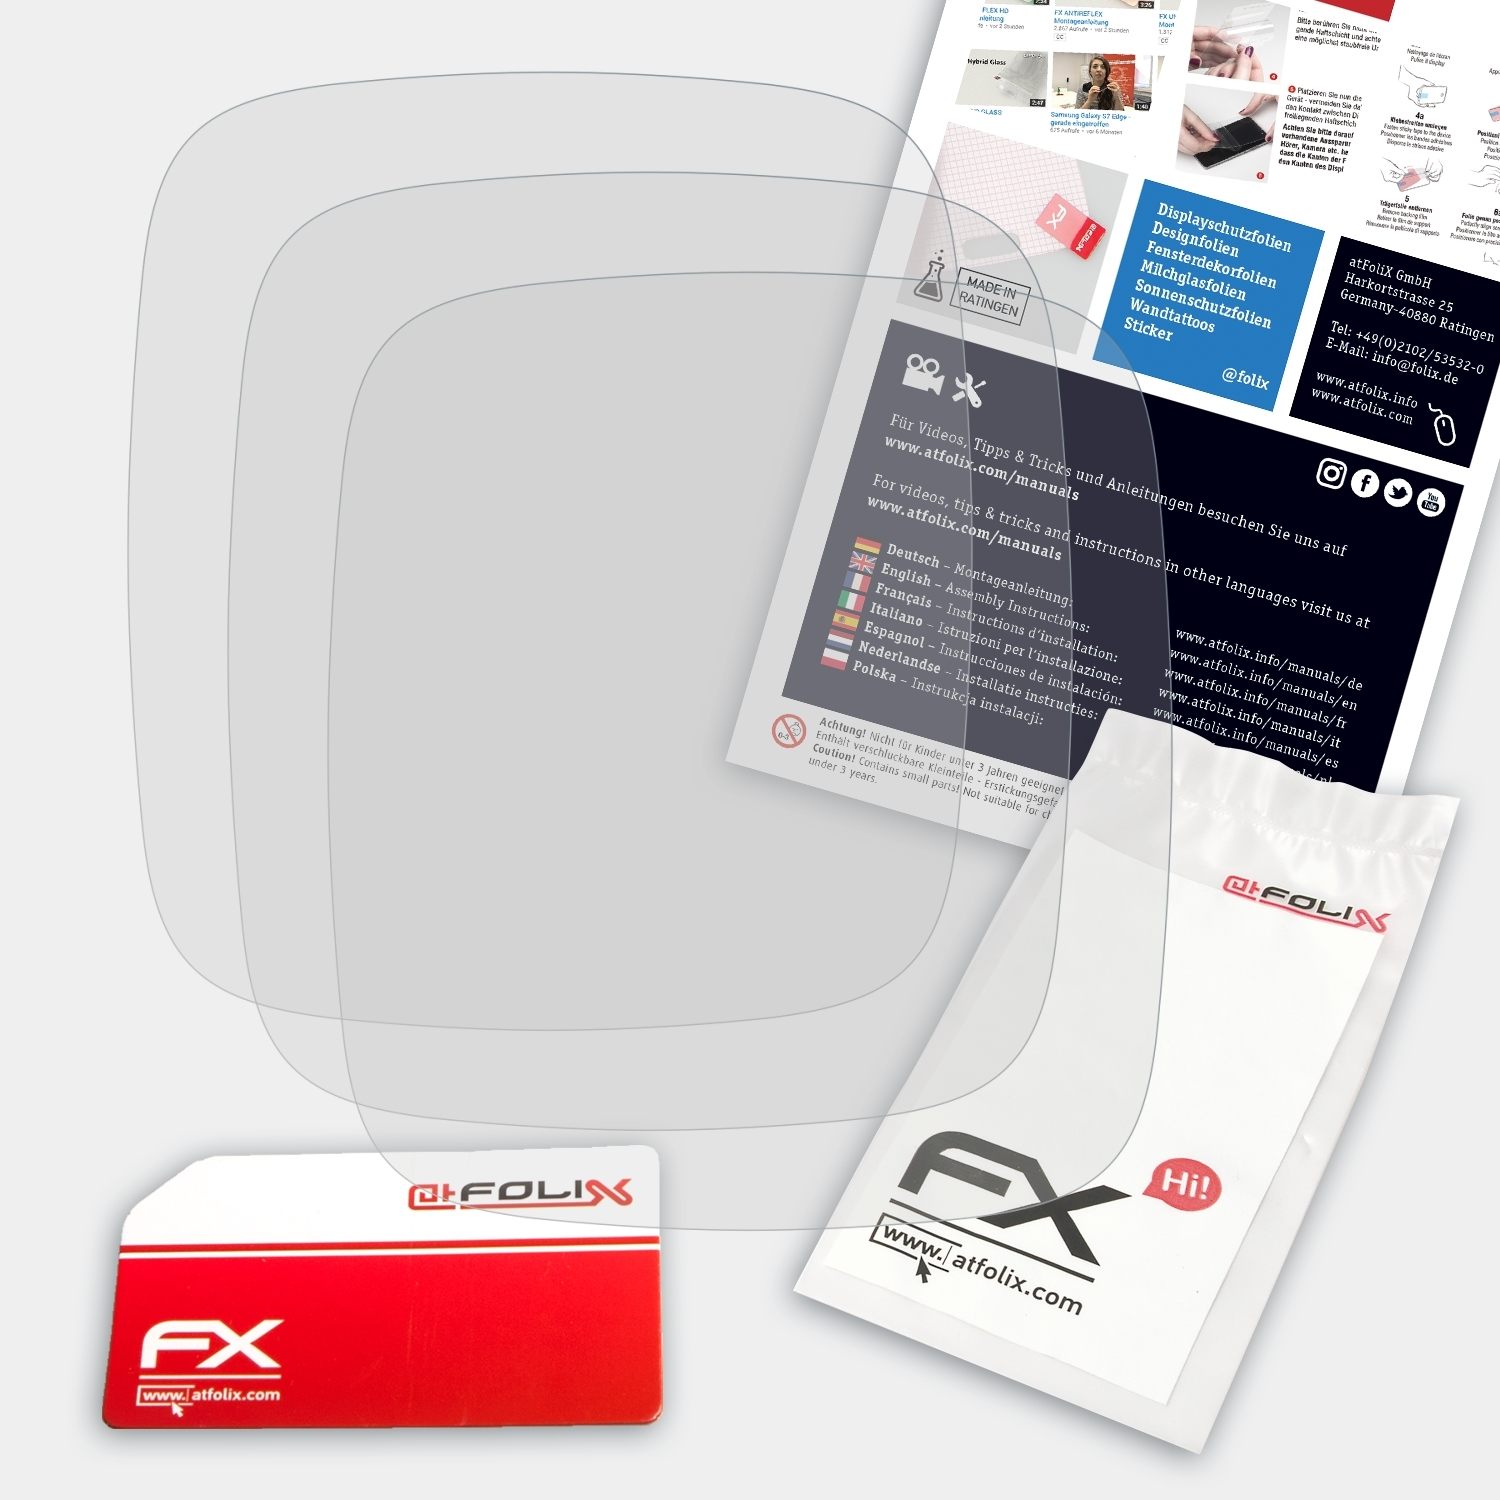 Displayschutz(für ATFOLIX 3x 3S) XPlora FX-Antireflex